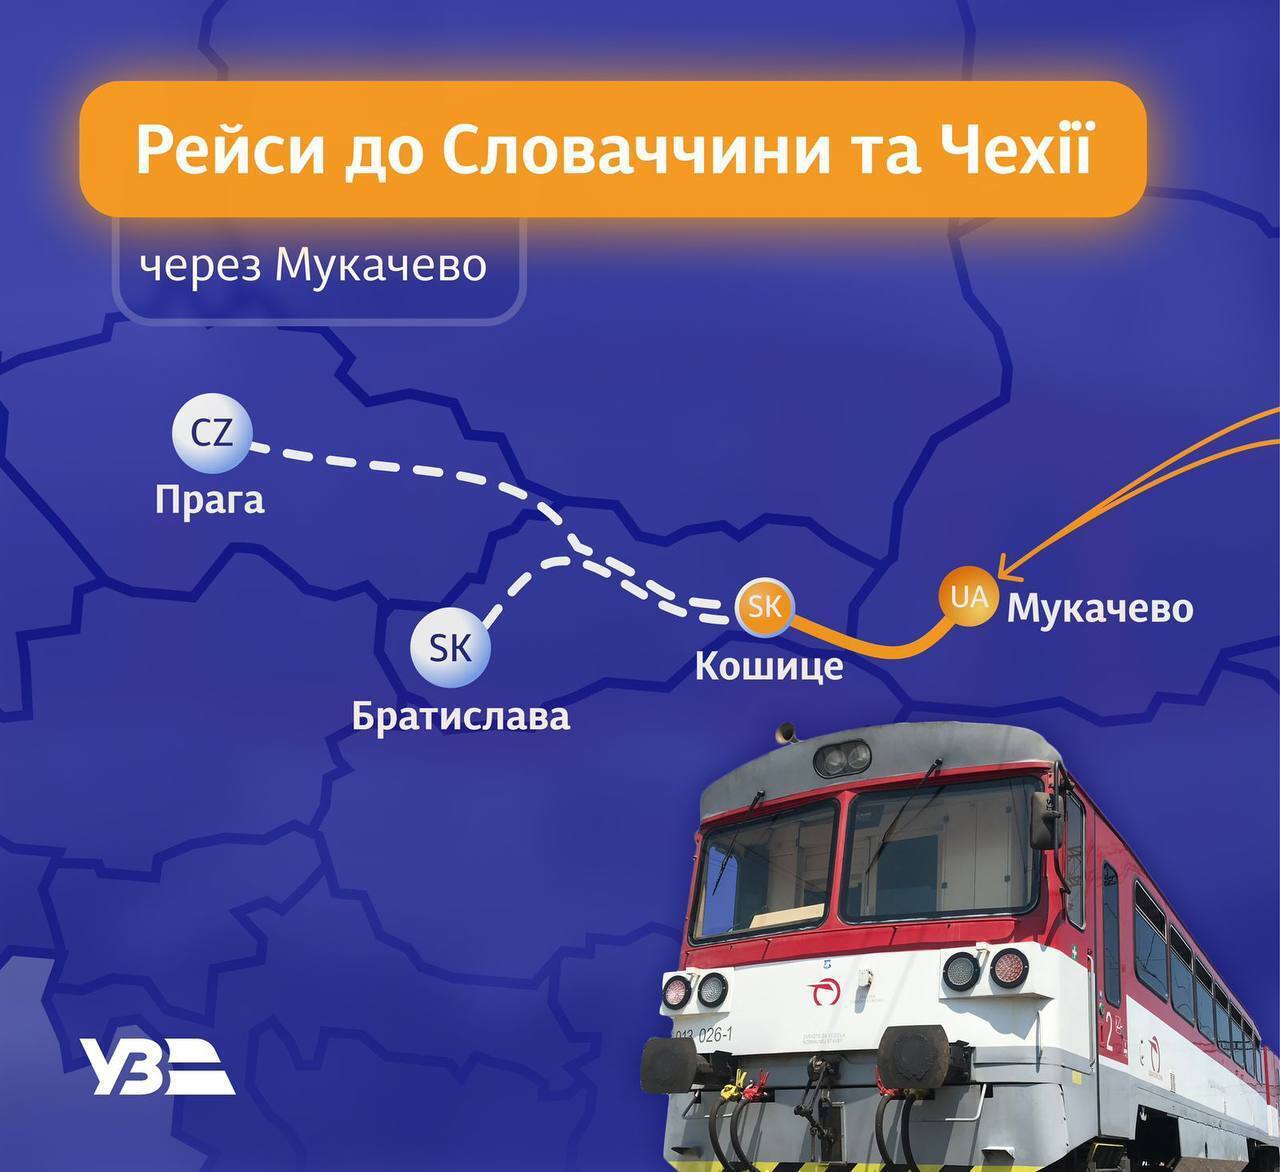 С поездов до Кошице можно пересесть на другие маршруты